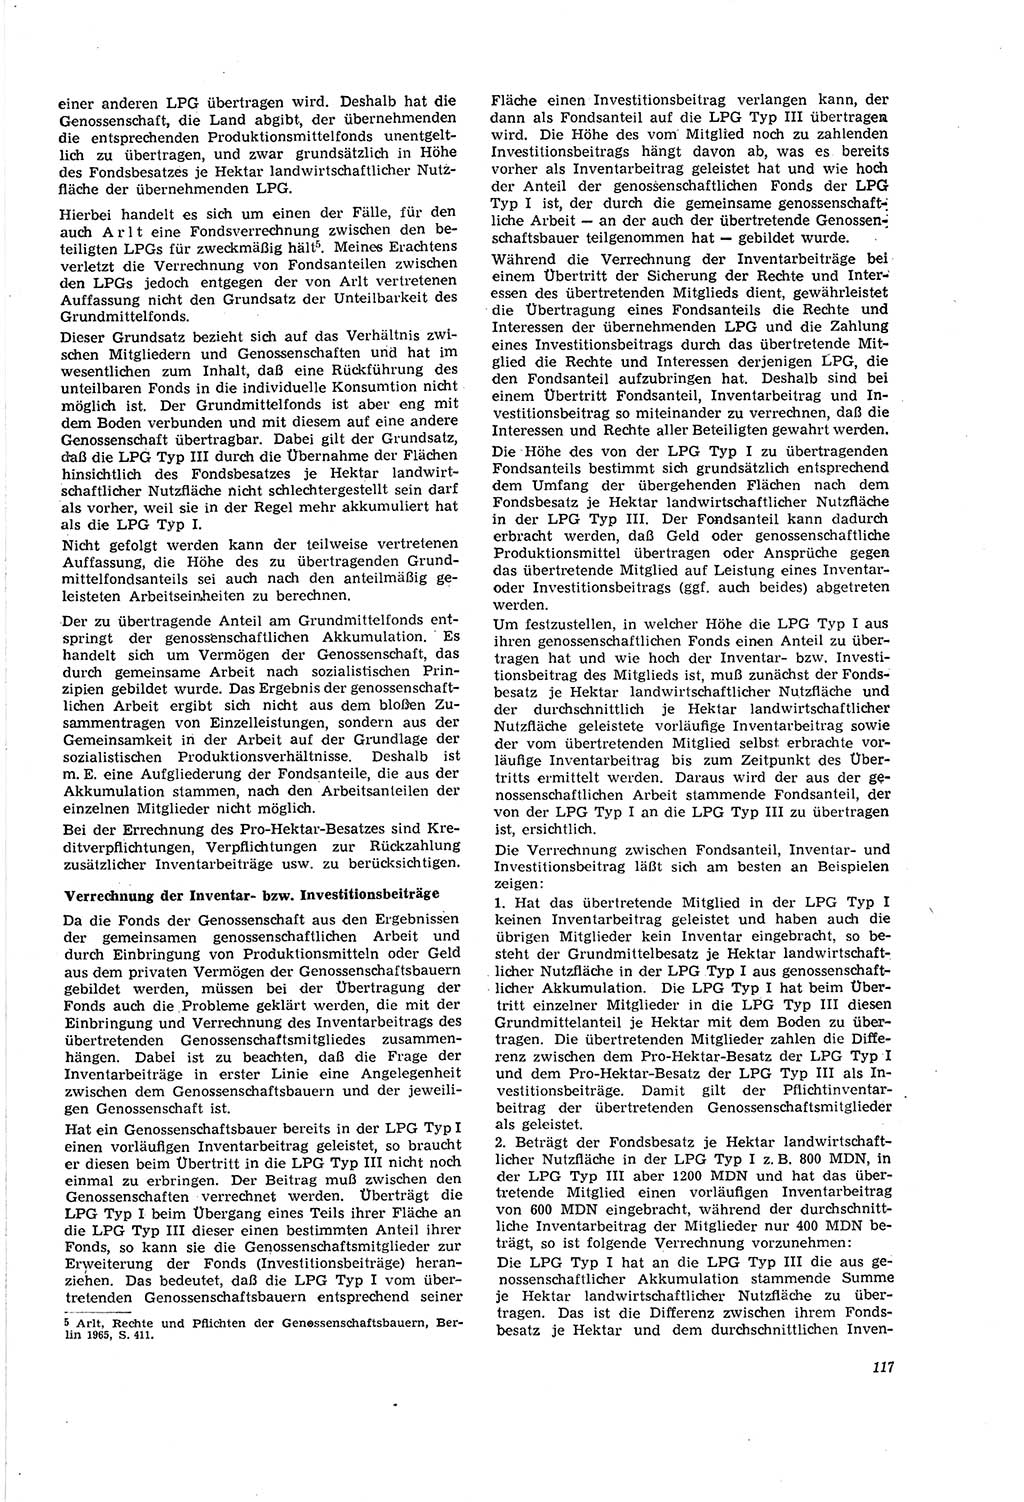 Neue Justiz (NJ), Zeitschrift für Recht und Rechtswissenschaft [Deutsche Demokratische Republik (DDR)], 20. Jahrgang 1966, Seite 117 (NJ DDR 1966, S. 117)